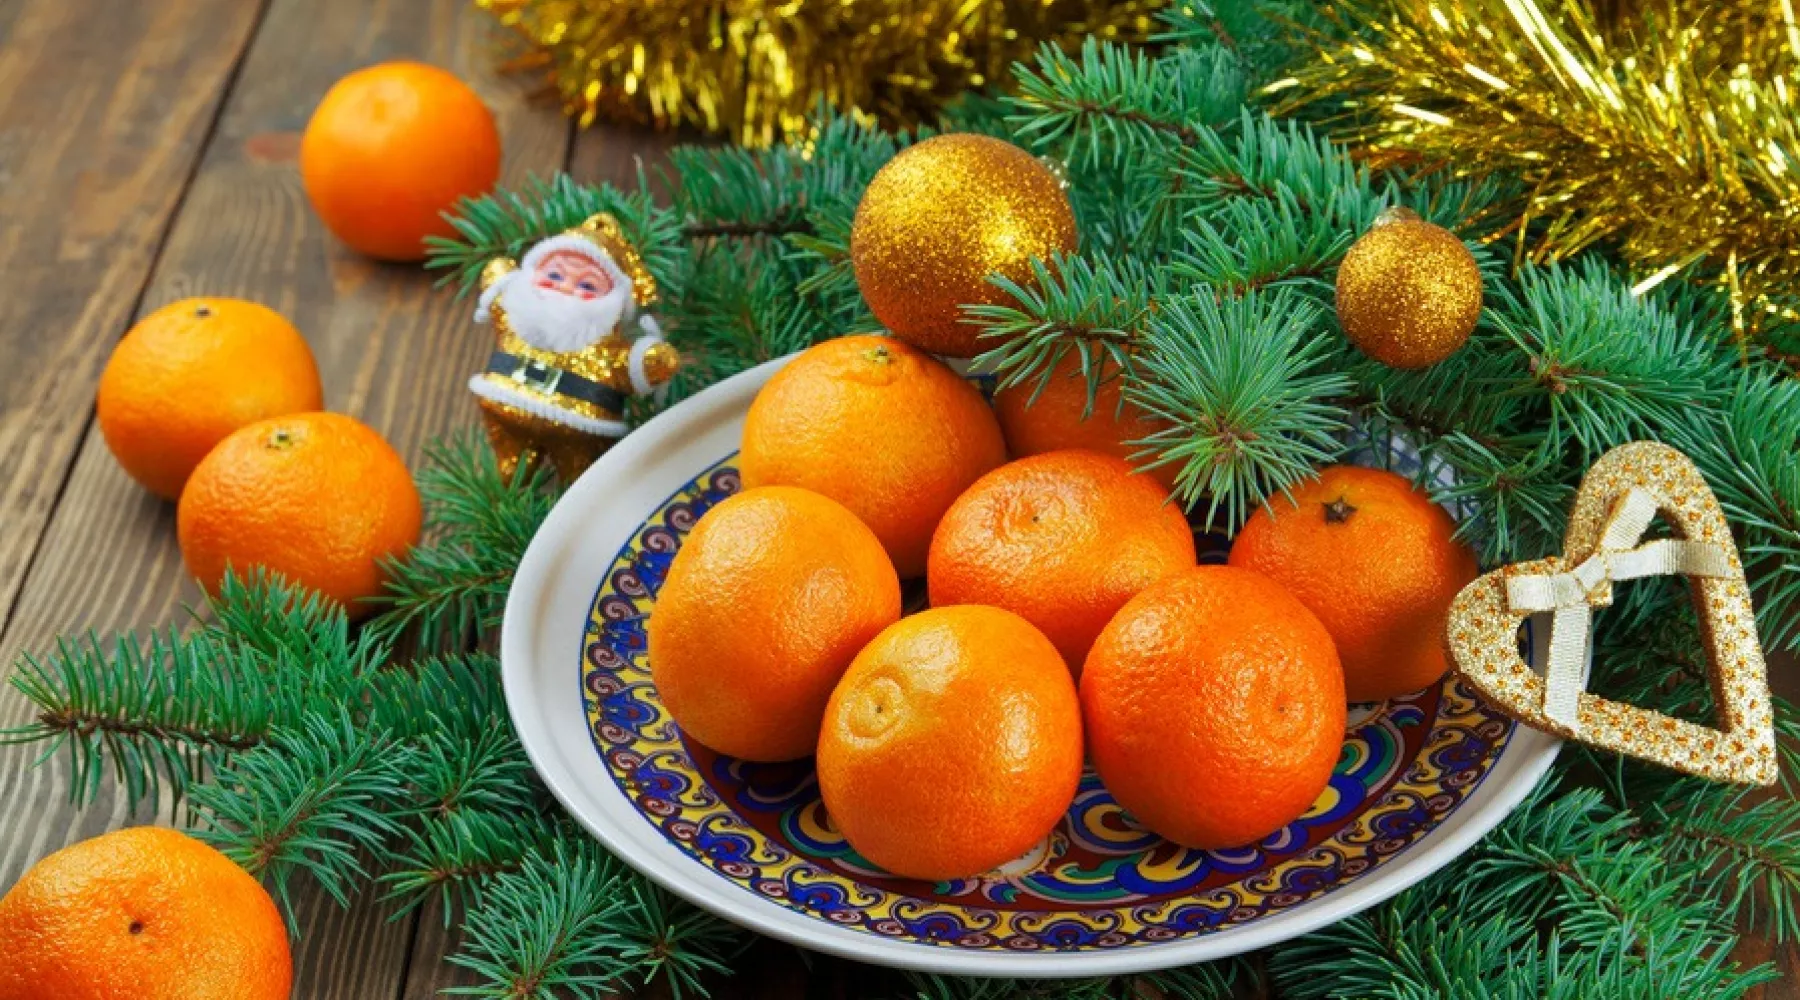 мандарины, новогодний стол